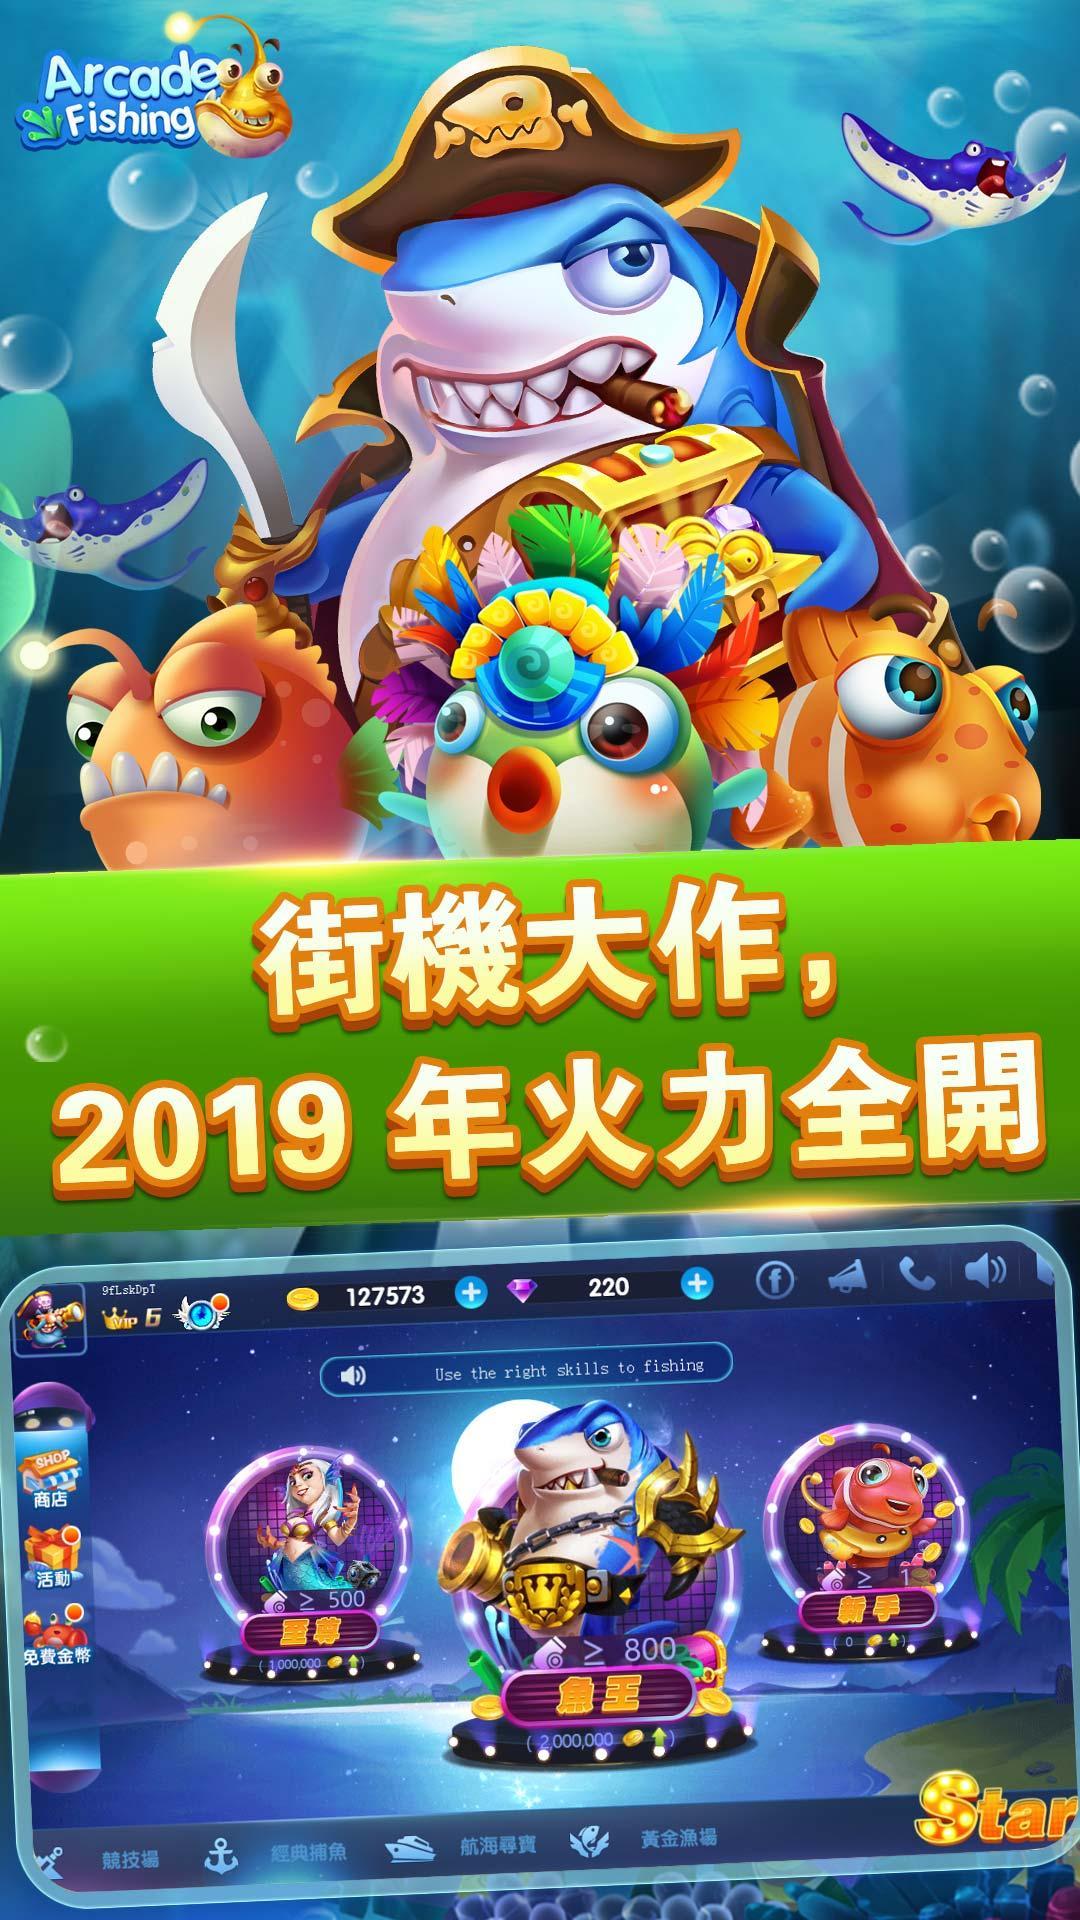 Arcade Fishing-2019升級版電玩機台捕魚